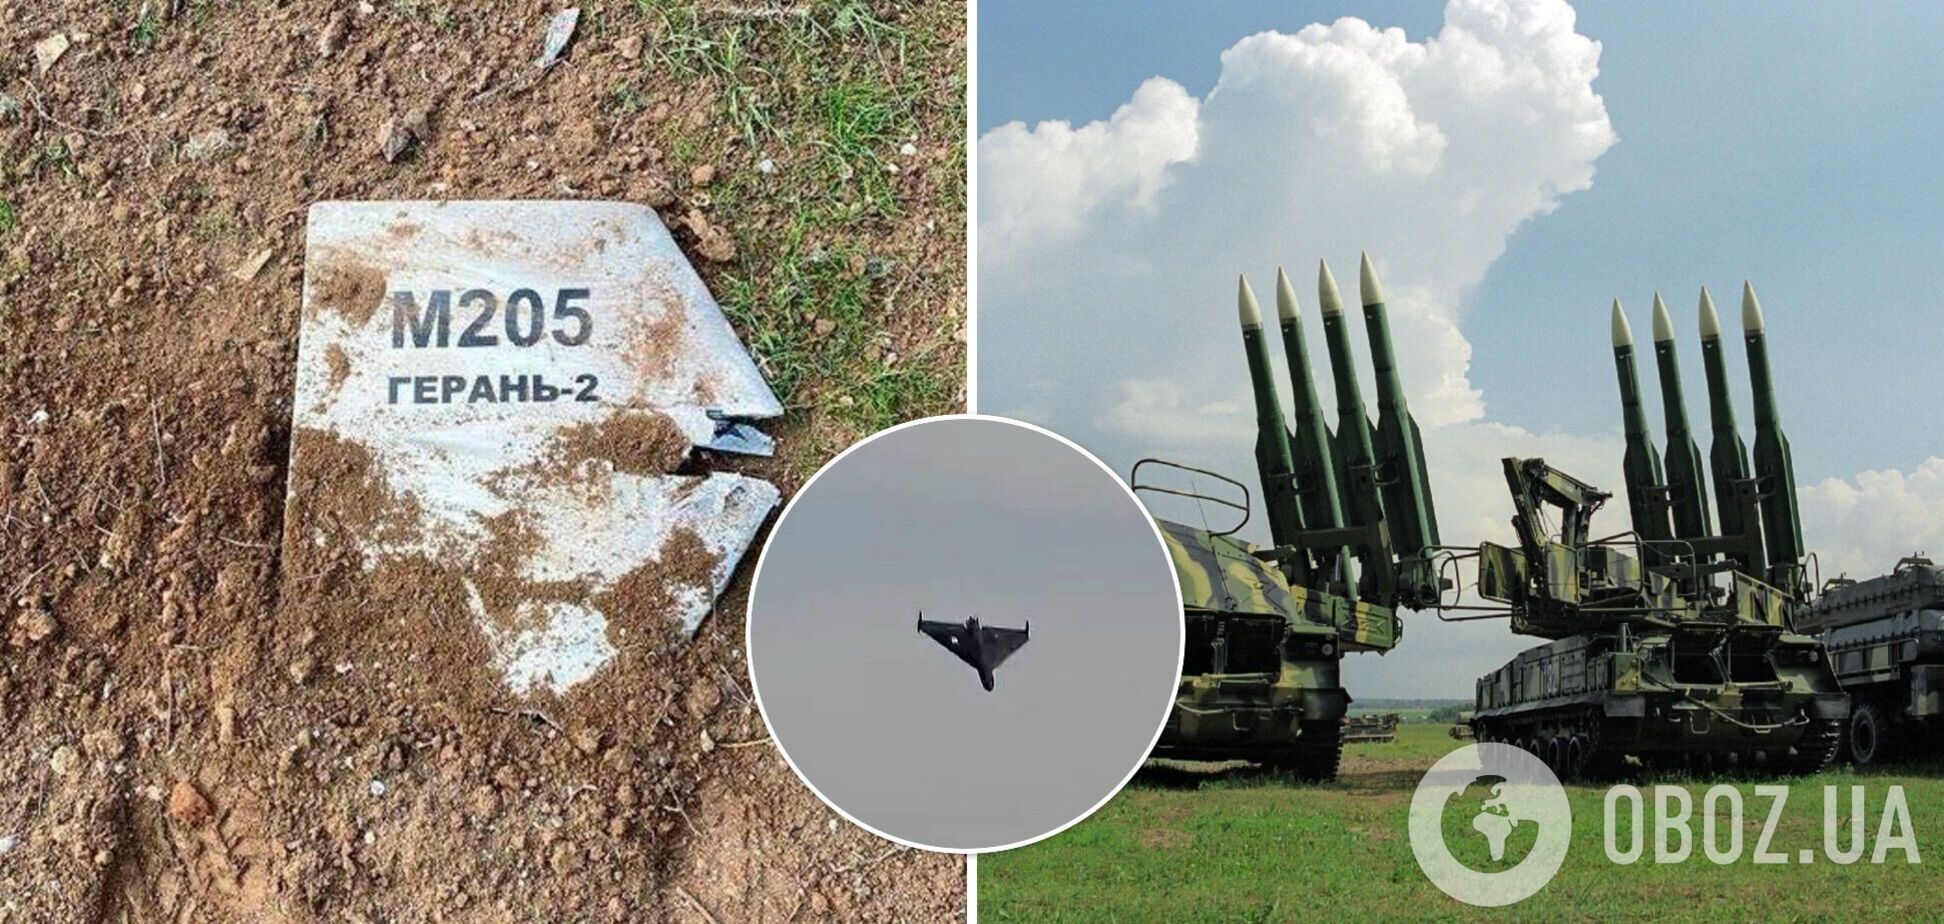 Украинская ПВО продолжает уничтожать дроны Shahed-136